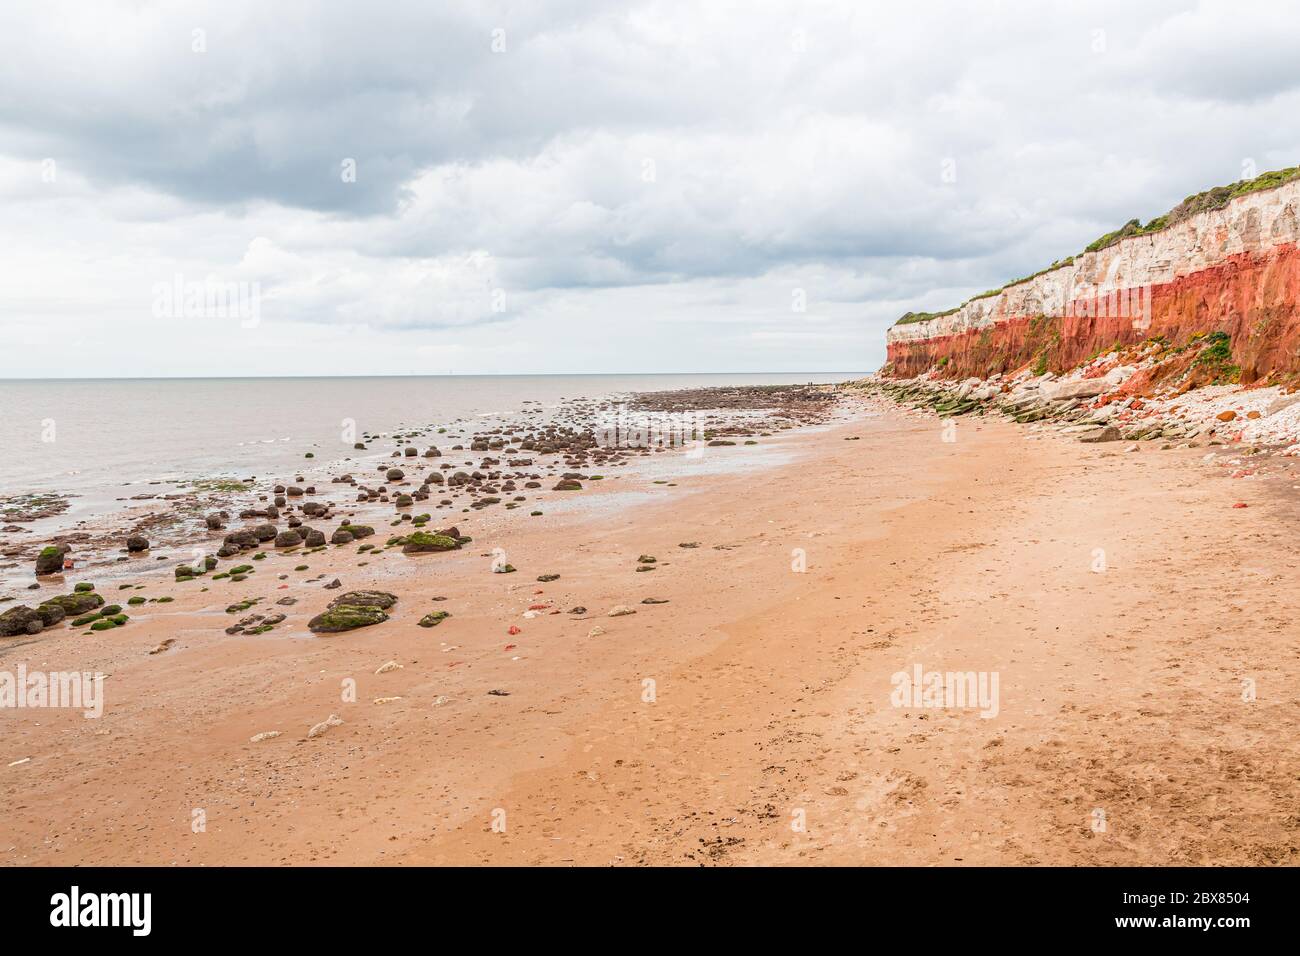 Rocas sedimentarias de color naranja, rojo y blanco a lo largo de la playa en Hunstanton, Norfolk, East Anglia, Reino Unido. Foto de stock